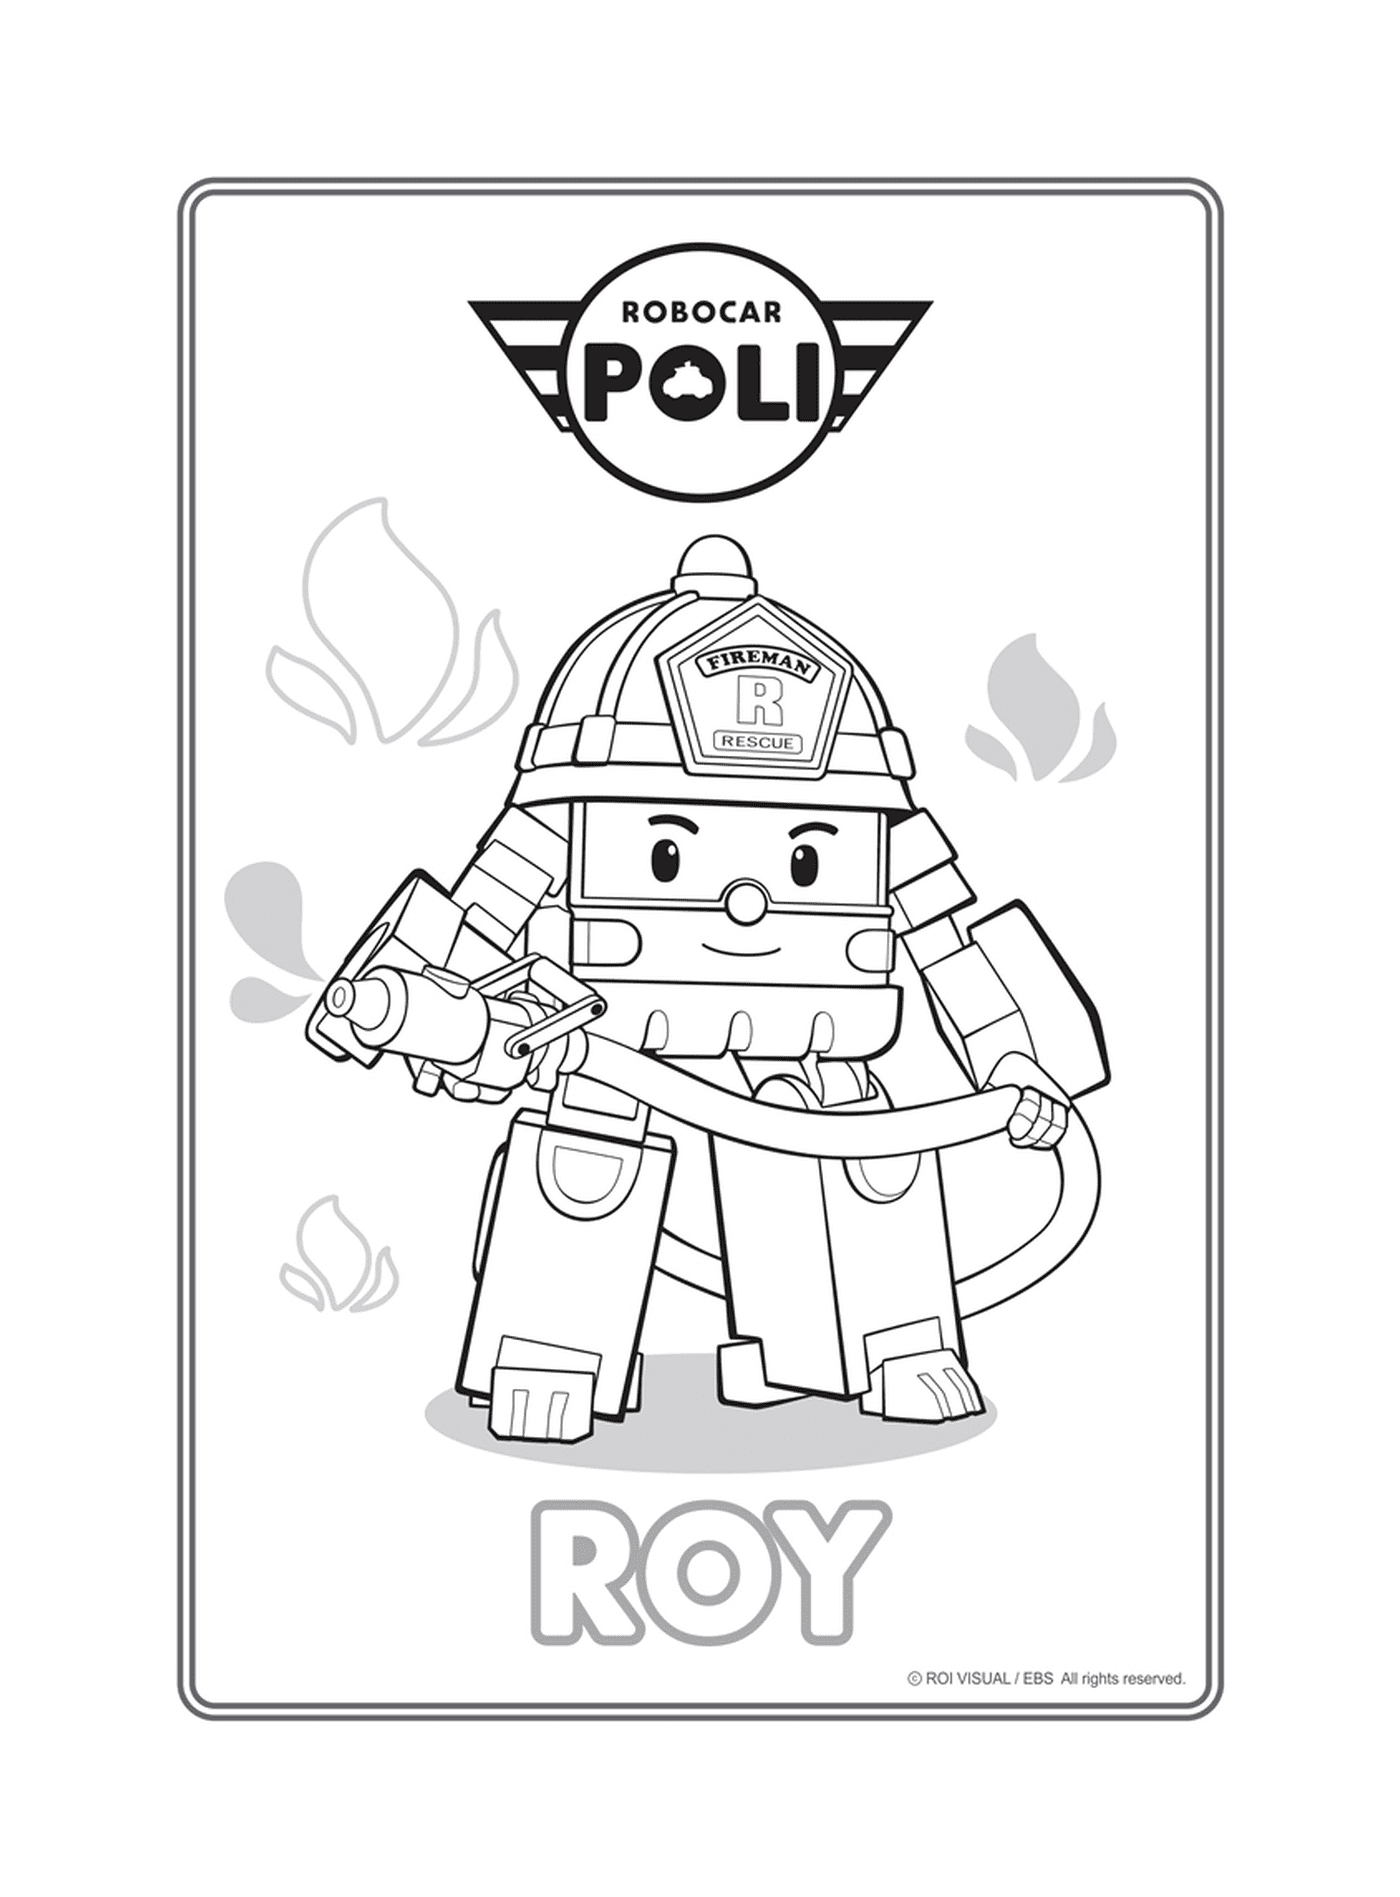   Roy, le pompier de Robocar Poli 